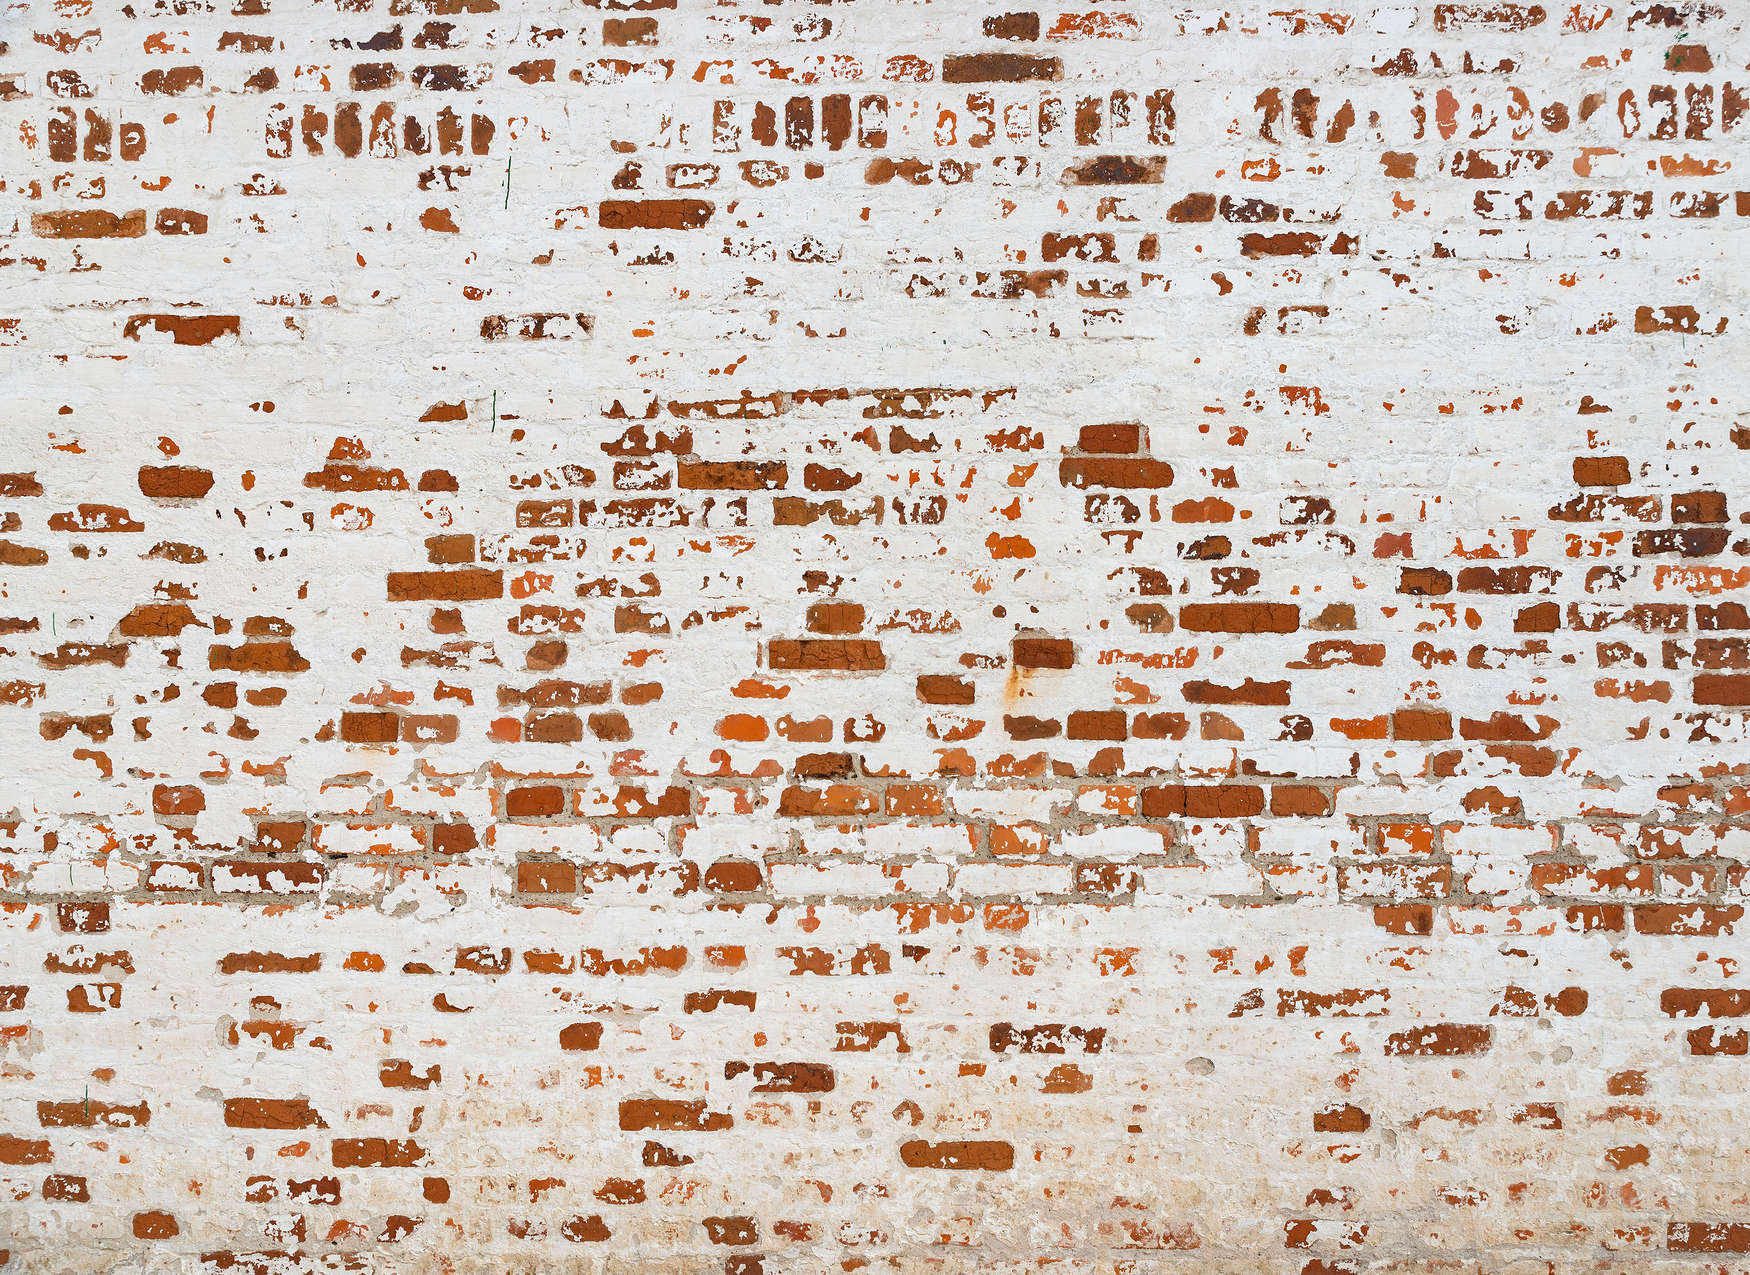             Mural de Pared de Ladrillo con Efecto 3D - Blanco, Marrón, Rojo
        